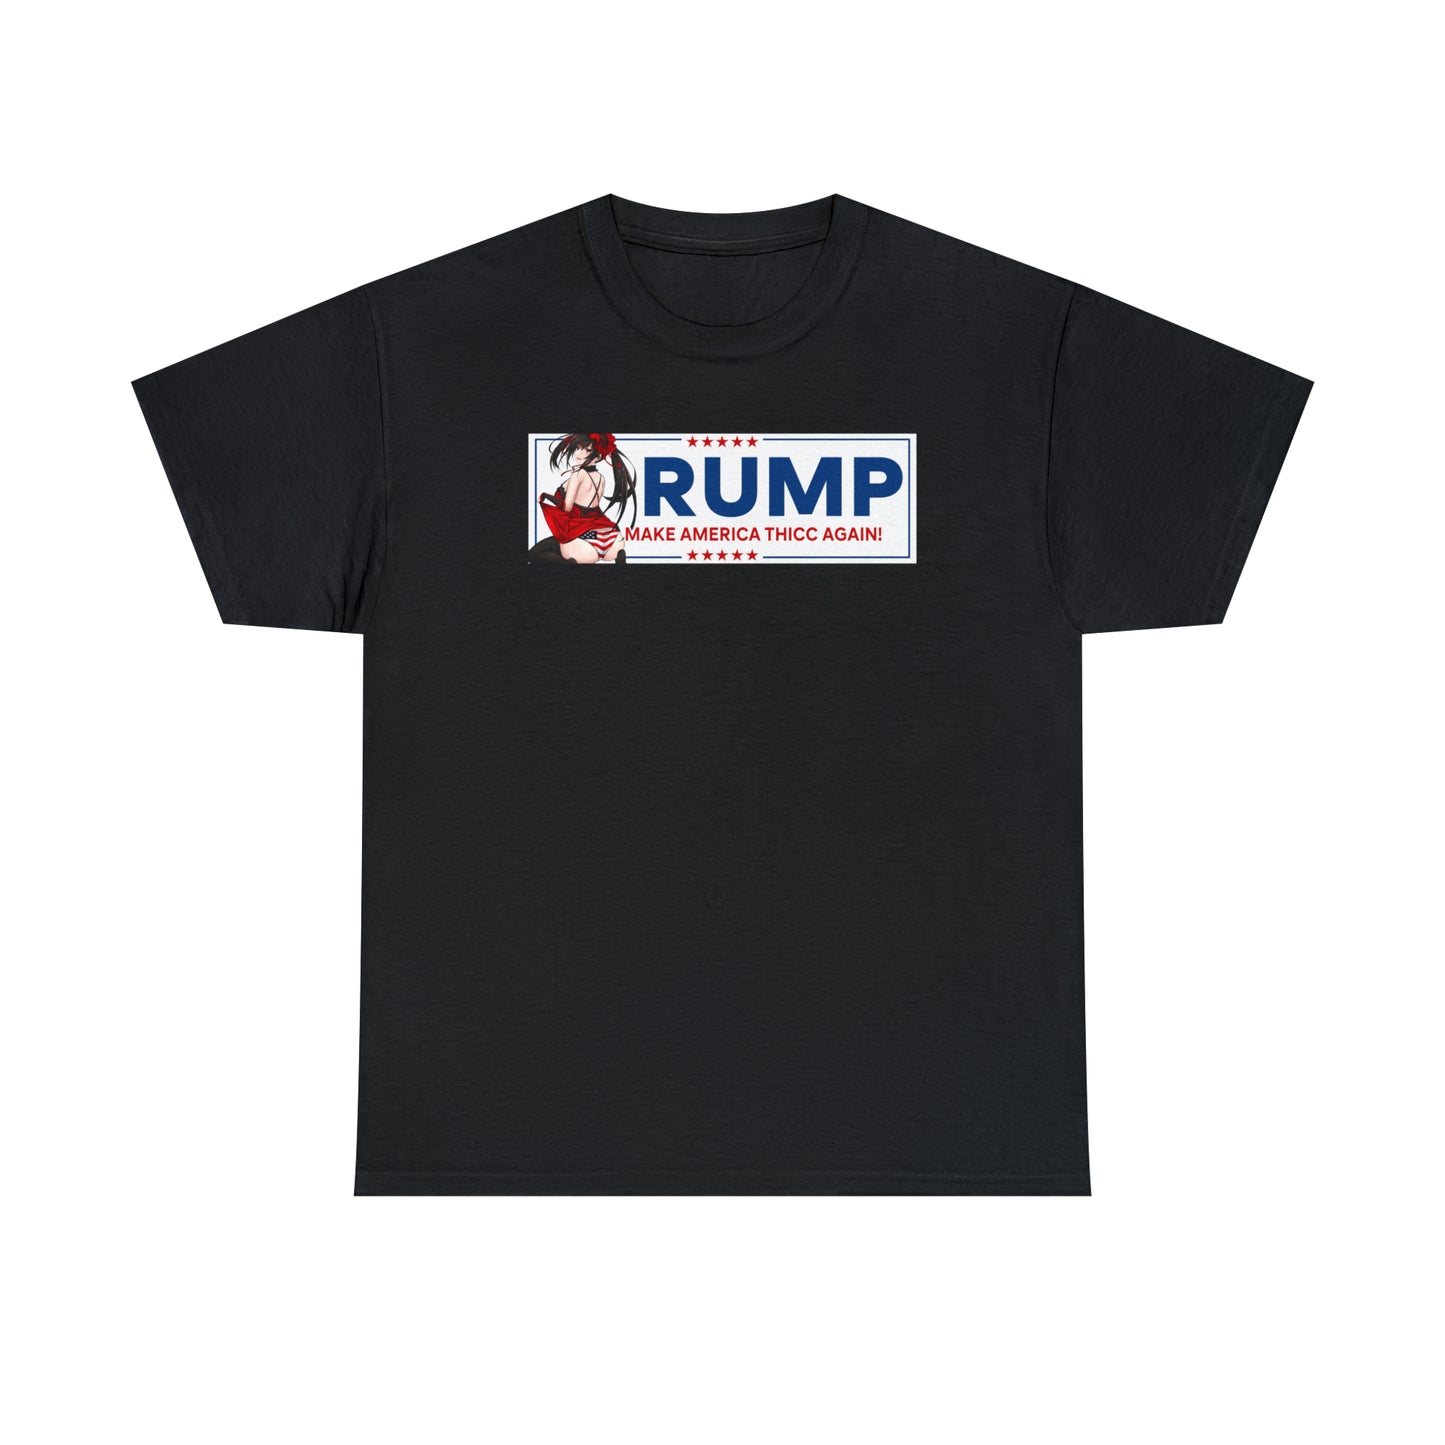 Rump Kurumi T-Shirt